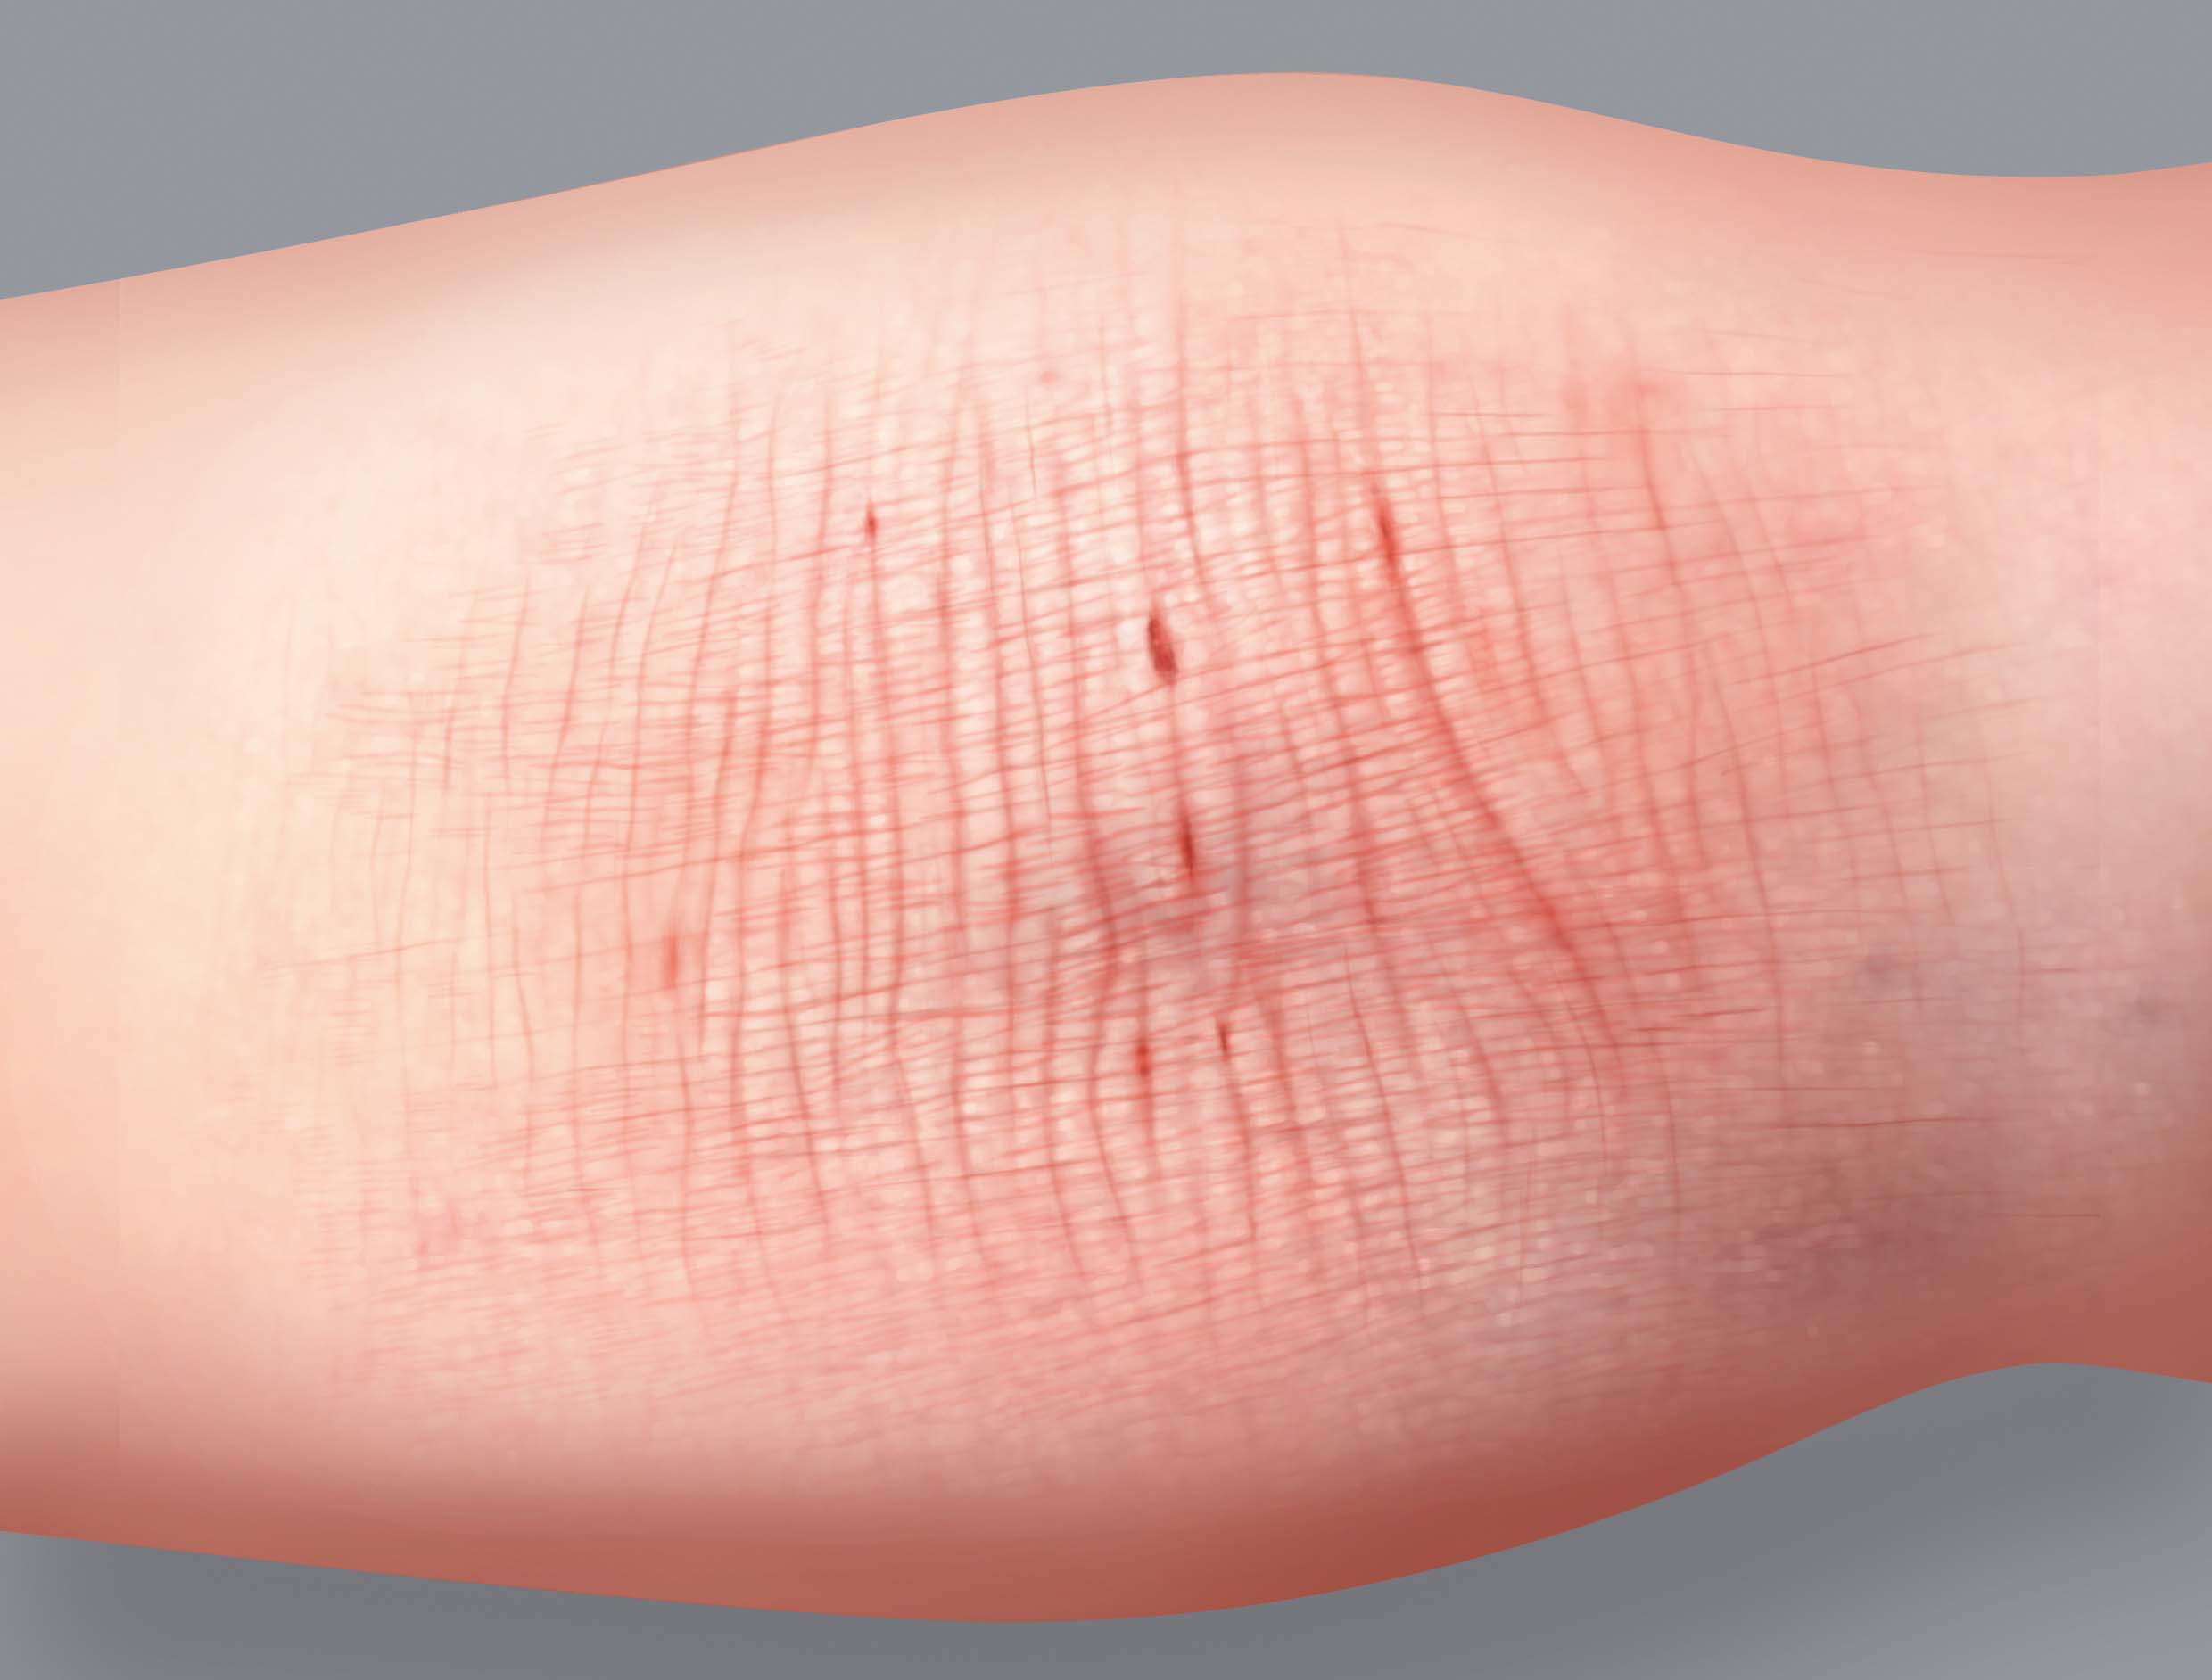 Sintomas do eczema atópico: espessamento de pele ou liquenificação